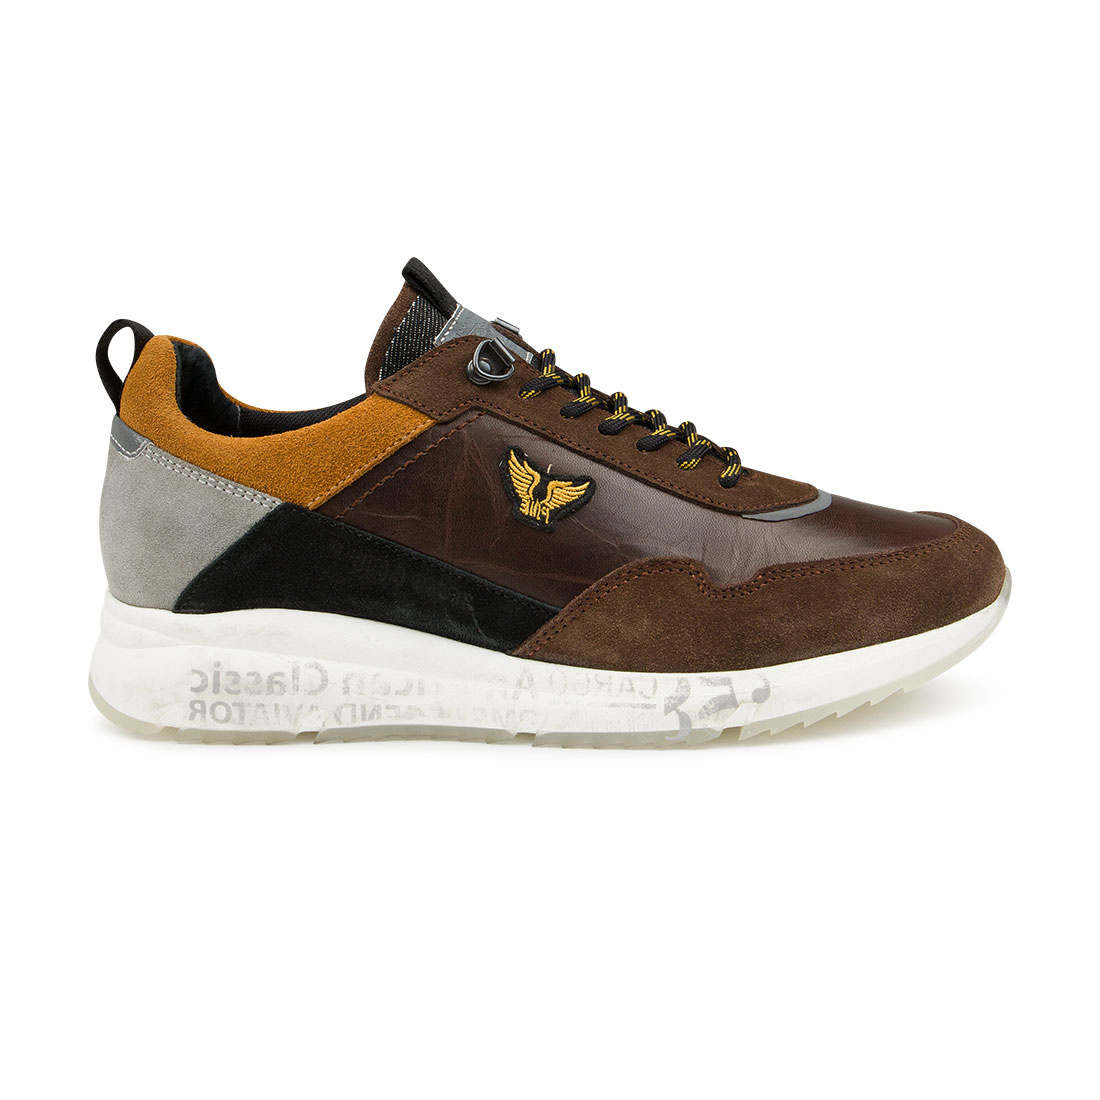 PME Sneakers Notcher Leather Dark Brown (PBO216014 - 771) - Nieuwnieuw.com Herenmode